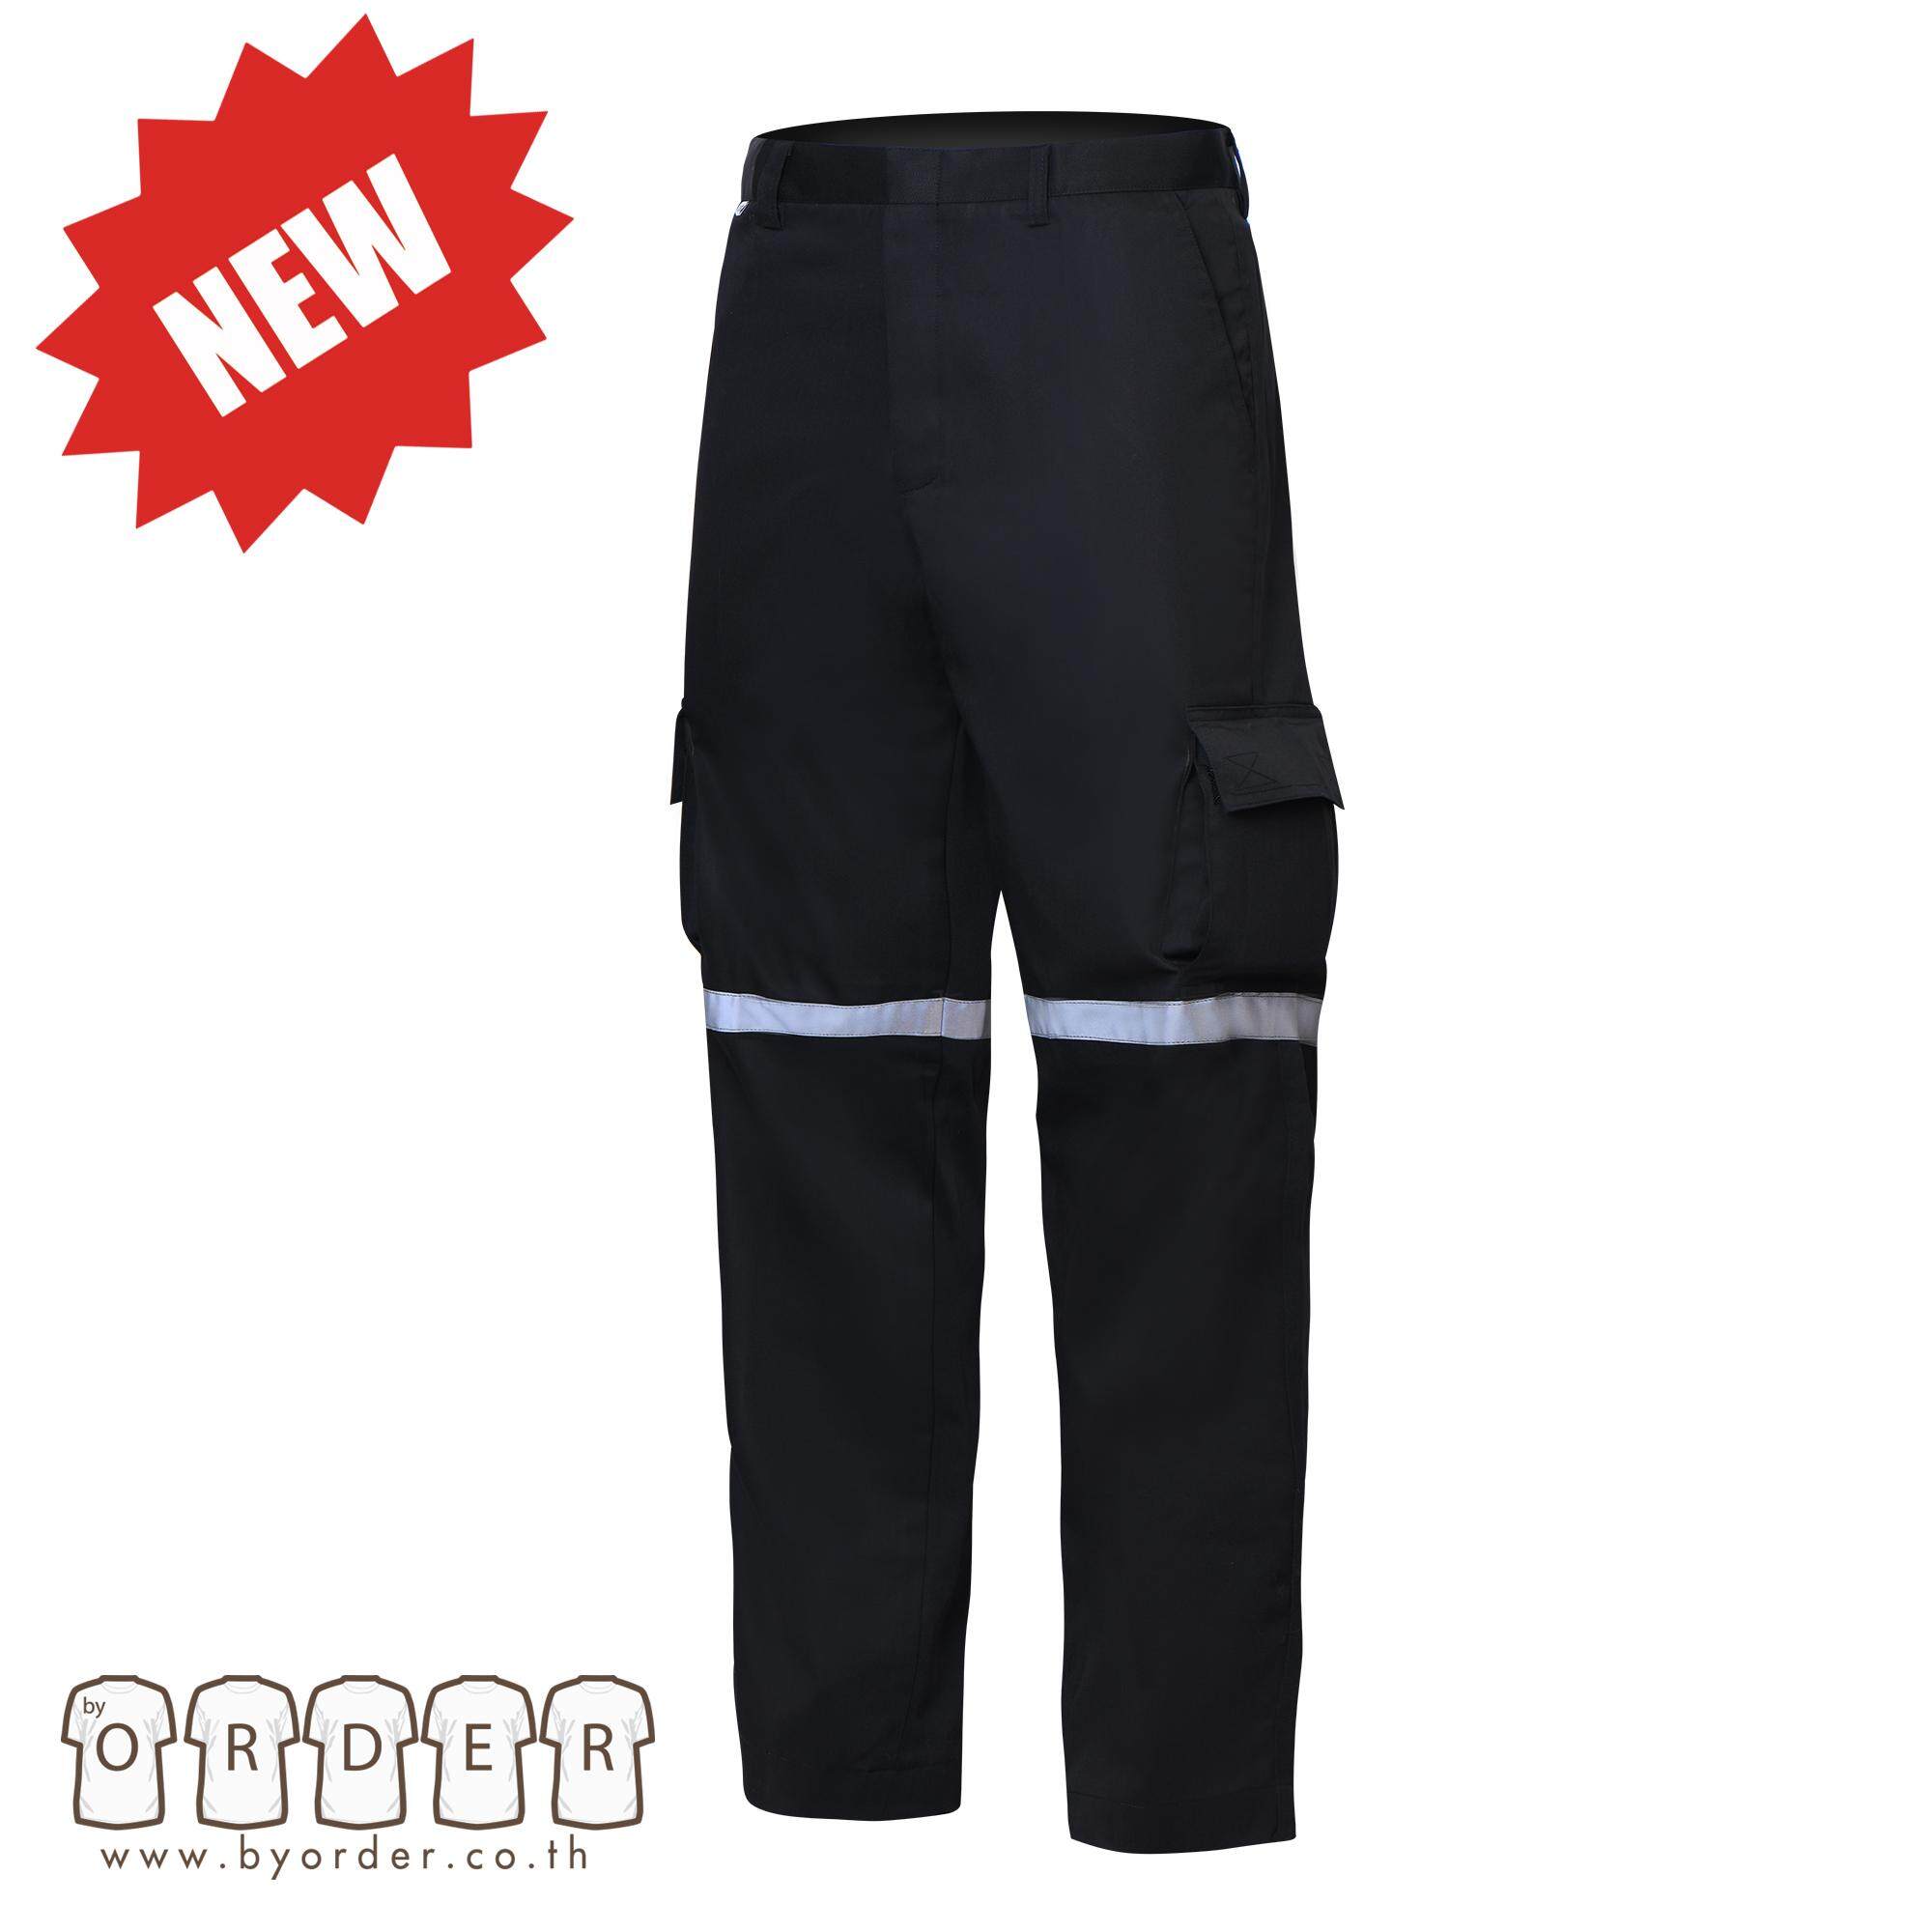 กางเกงคาร์โก้ V01 กางเกงขายาวหลายกระเป๋า สีกรมท่า สีดำ  กางเกงช่าง กางเกงทำงาน ติดเทปสะท้อนแสง สี ดำ ขนาด EU:46 สี ดำขนาด EU:46